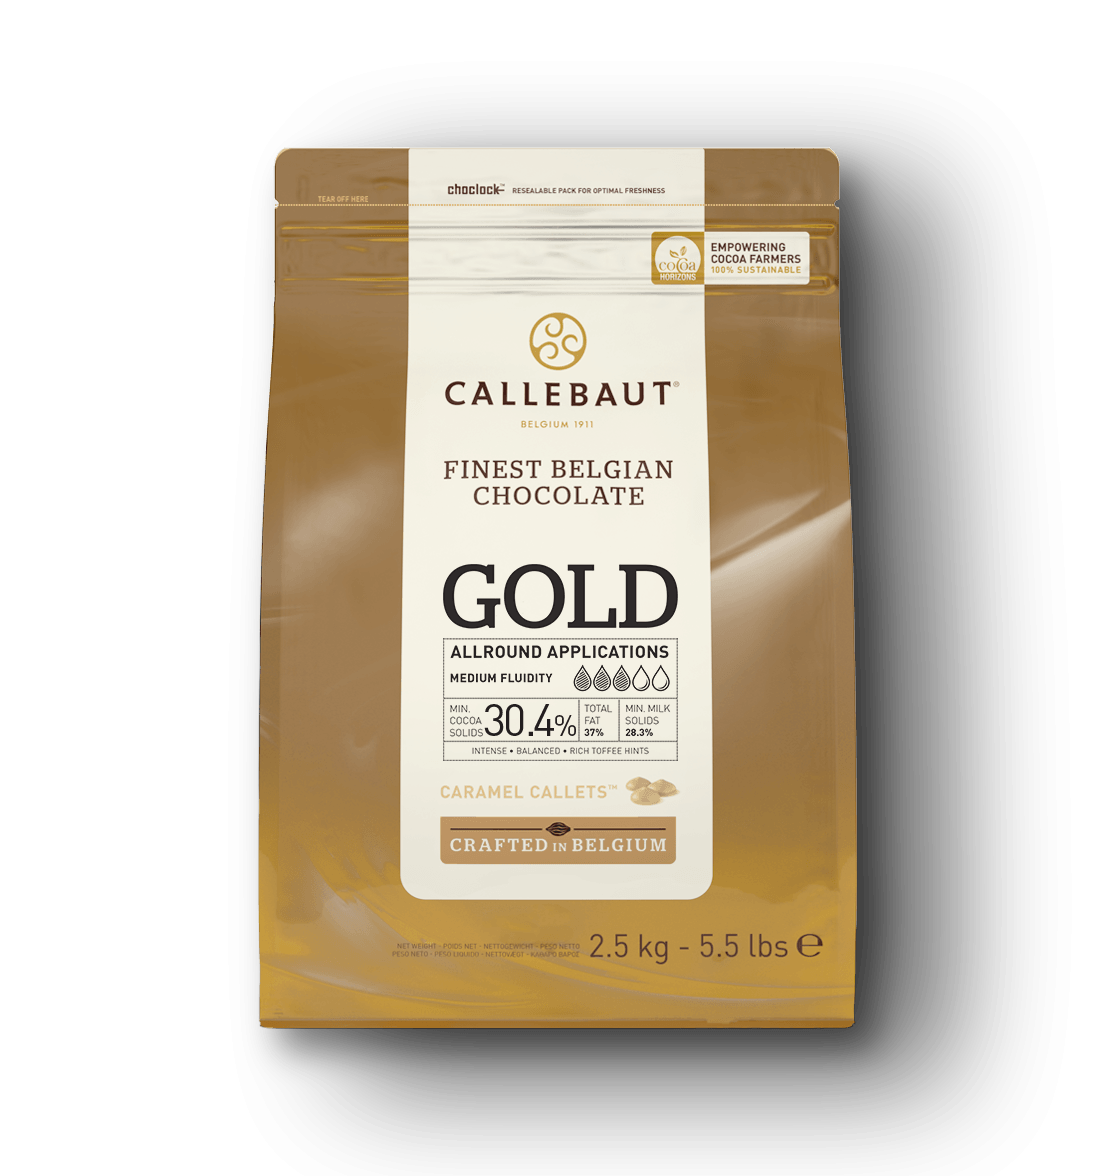 Couvertures - Gold - callets - 2.5kg bag (1)